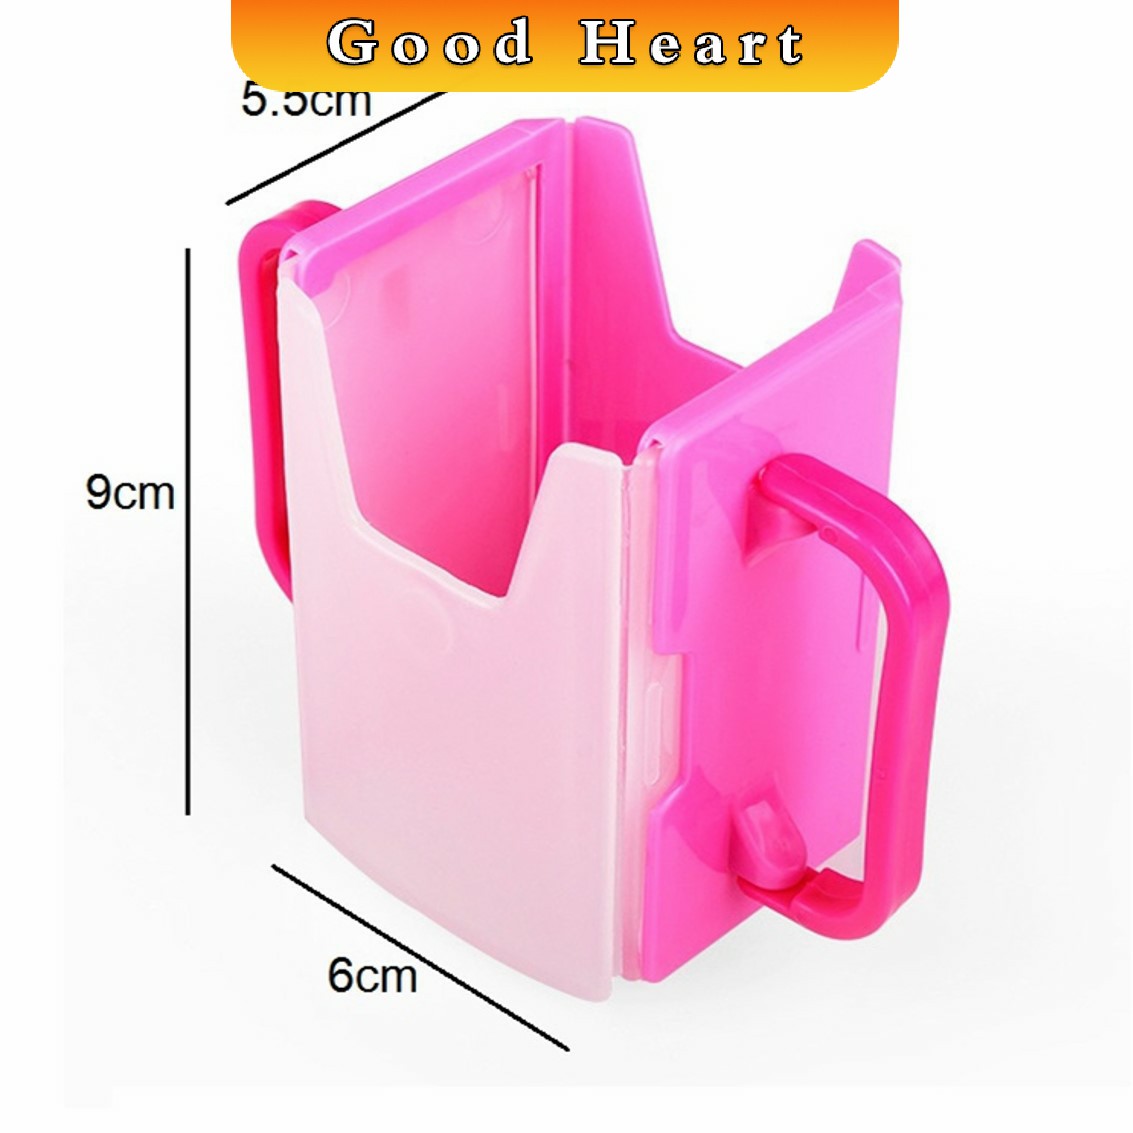 รูปภาพเพิ่มเติมของ กล่องกันบีบ สำหรับกันบีบกล่องนม ที่ใส่กล่องนม กล่องน้ำผลไม้ กล่องกันบีบ กันบีบกล่องนม Baby UHT Milk Easy Hold Pocket